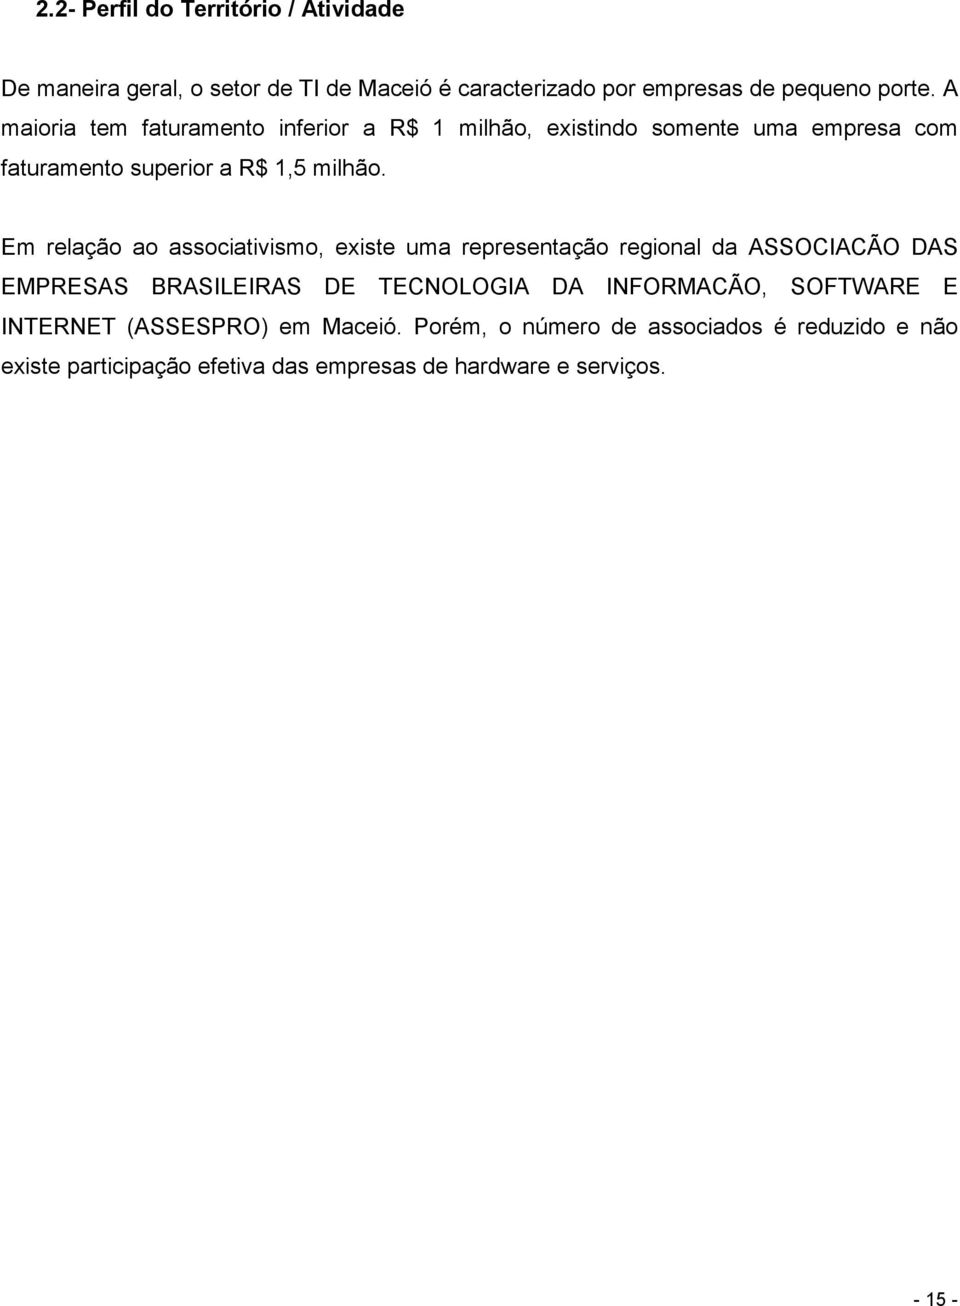 Em relação ao associativismo, existe uma representação regional da ASSOCIACÃO DAS EMPRESAS BRASILEIRAS DE TECNOLOGIA DA INFORMACÃO,